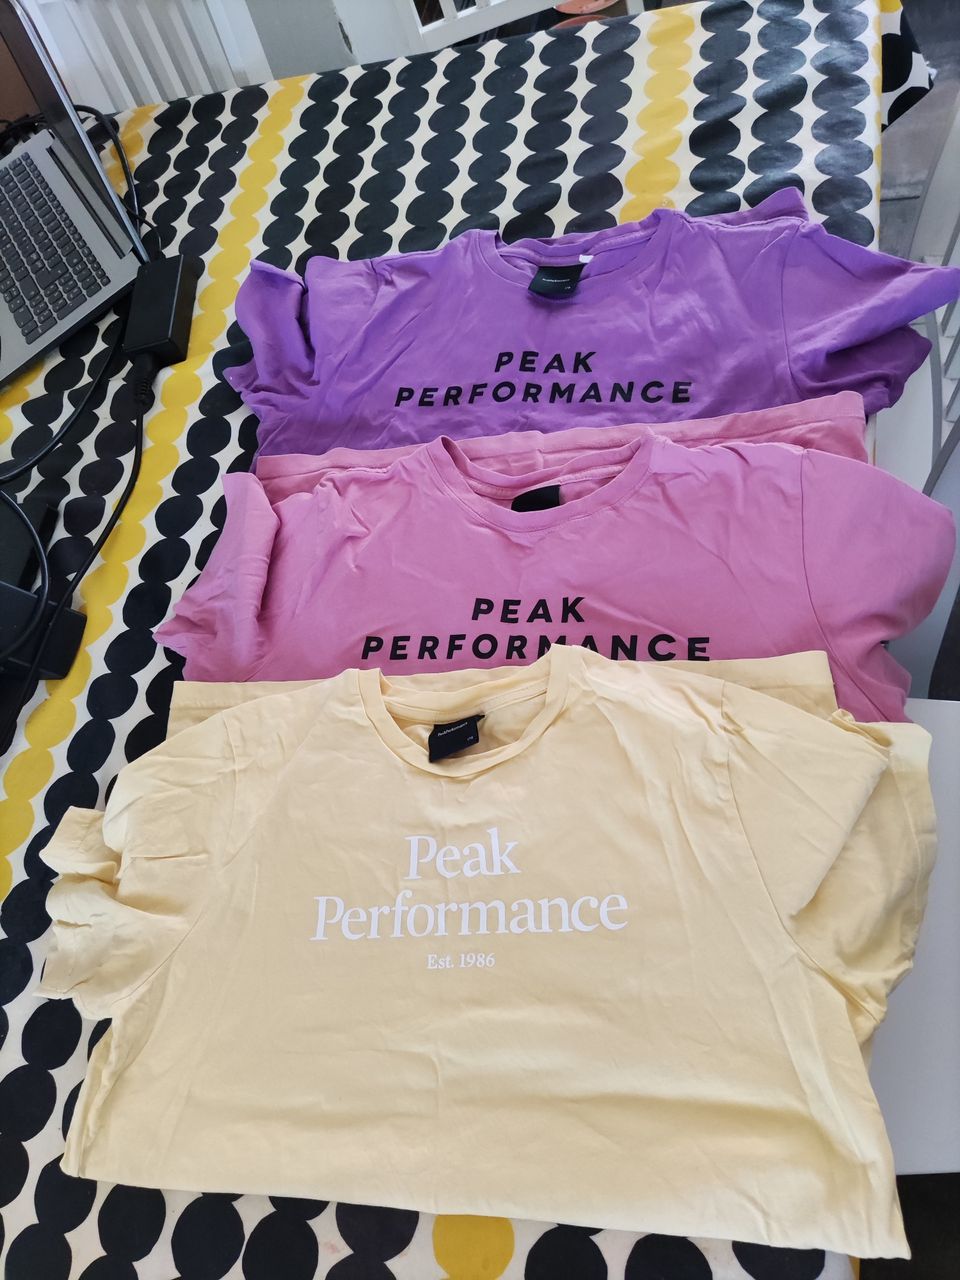 3 kpl Peanperformance T-paitoja (myydään pakettina)